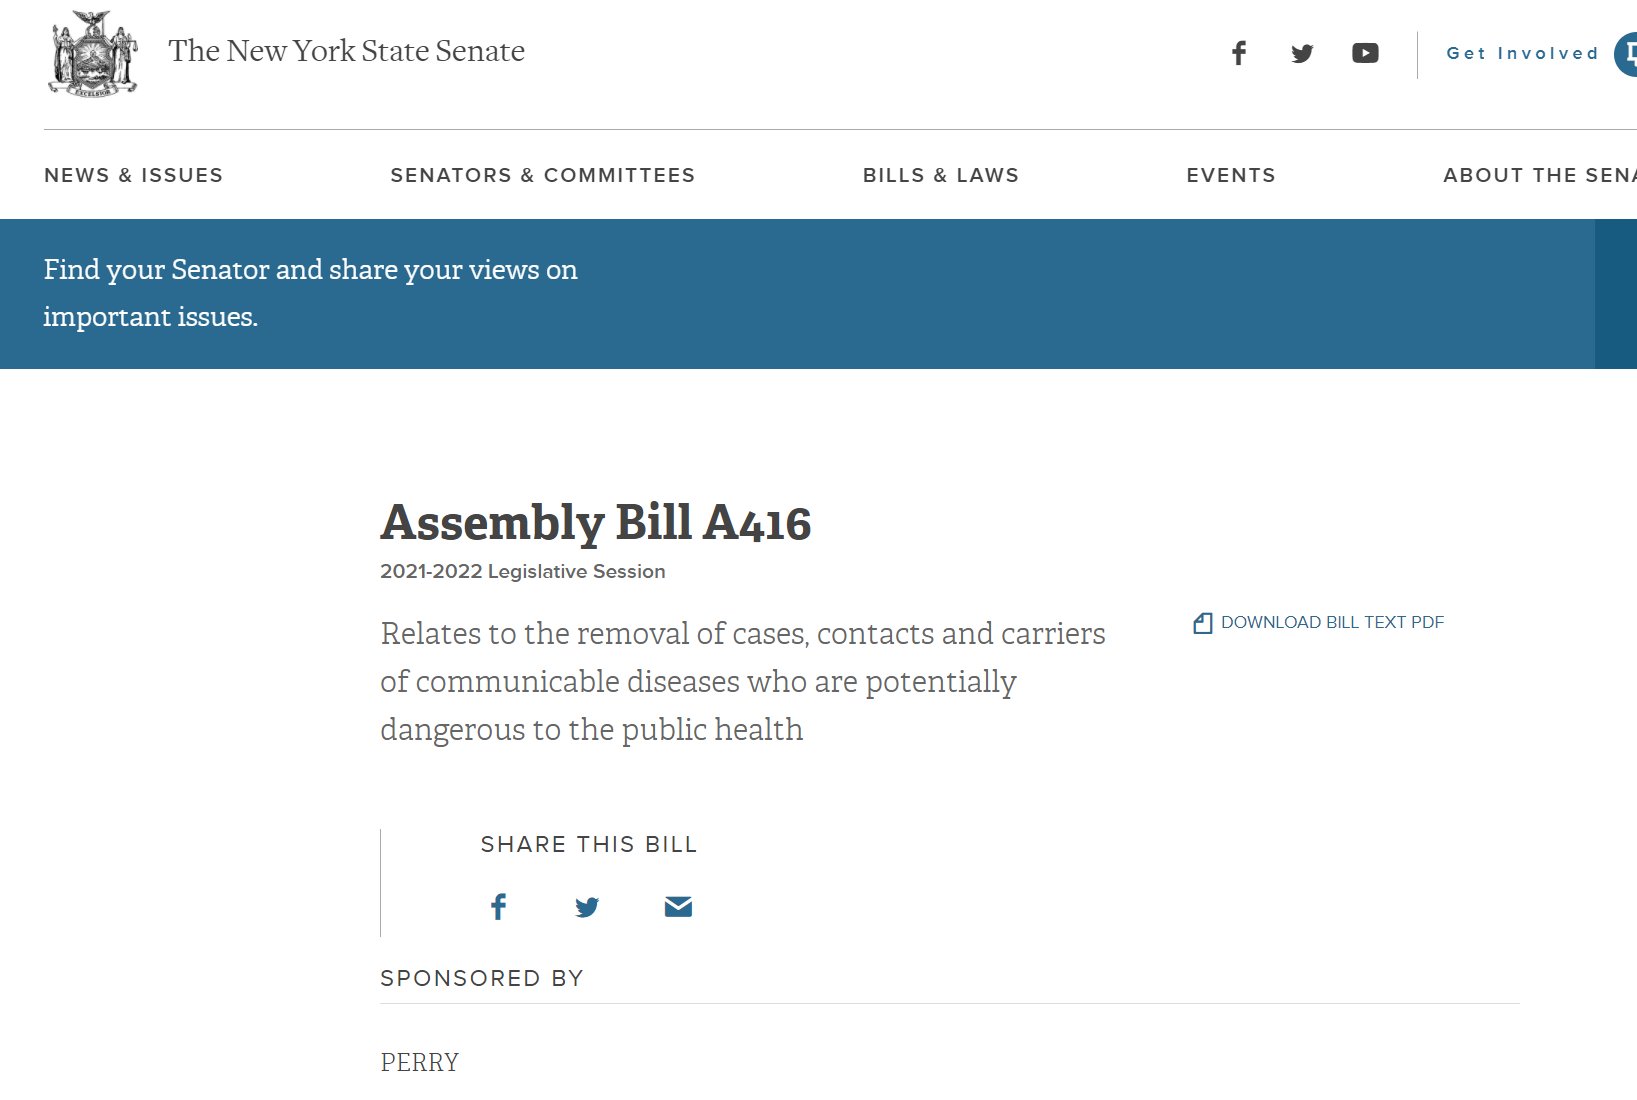 Assembly Bill A416